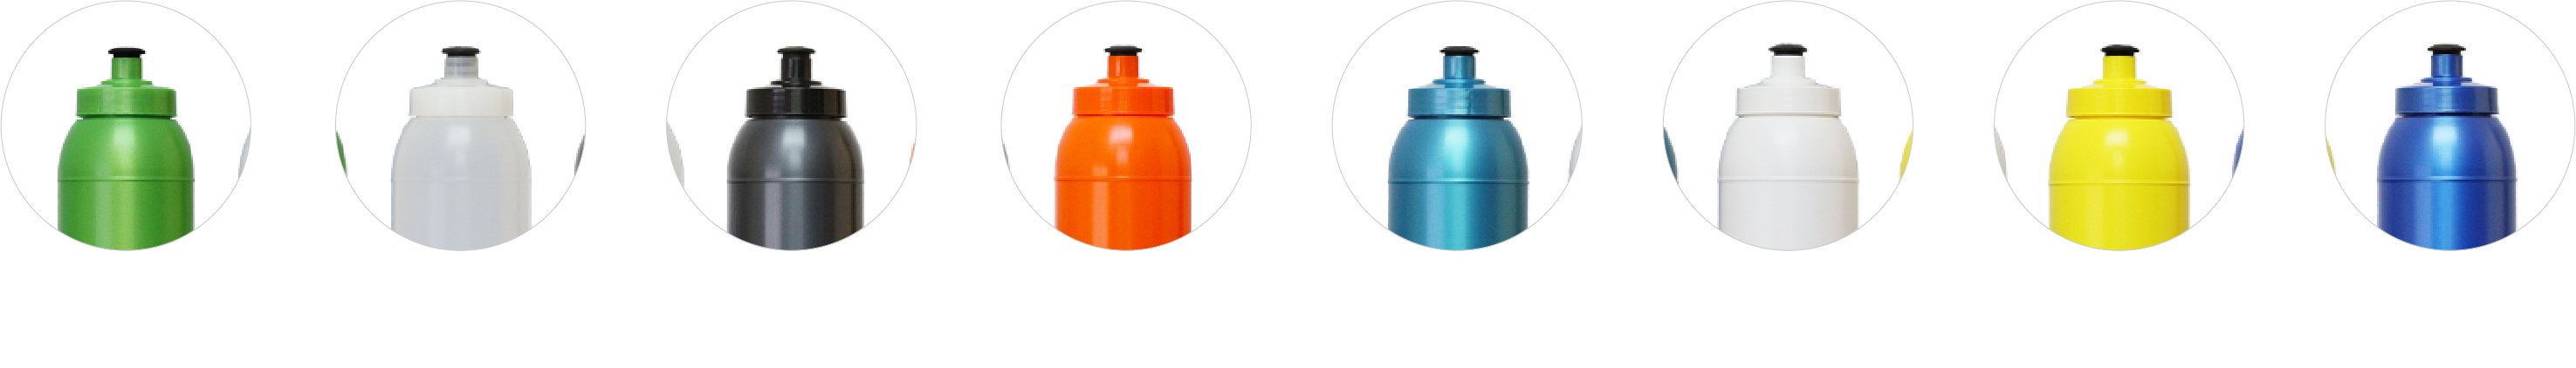 Optimum Drink Bottle Colours